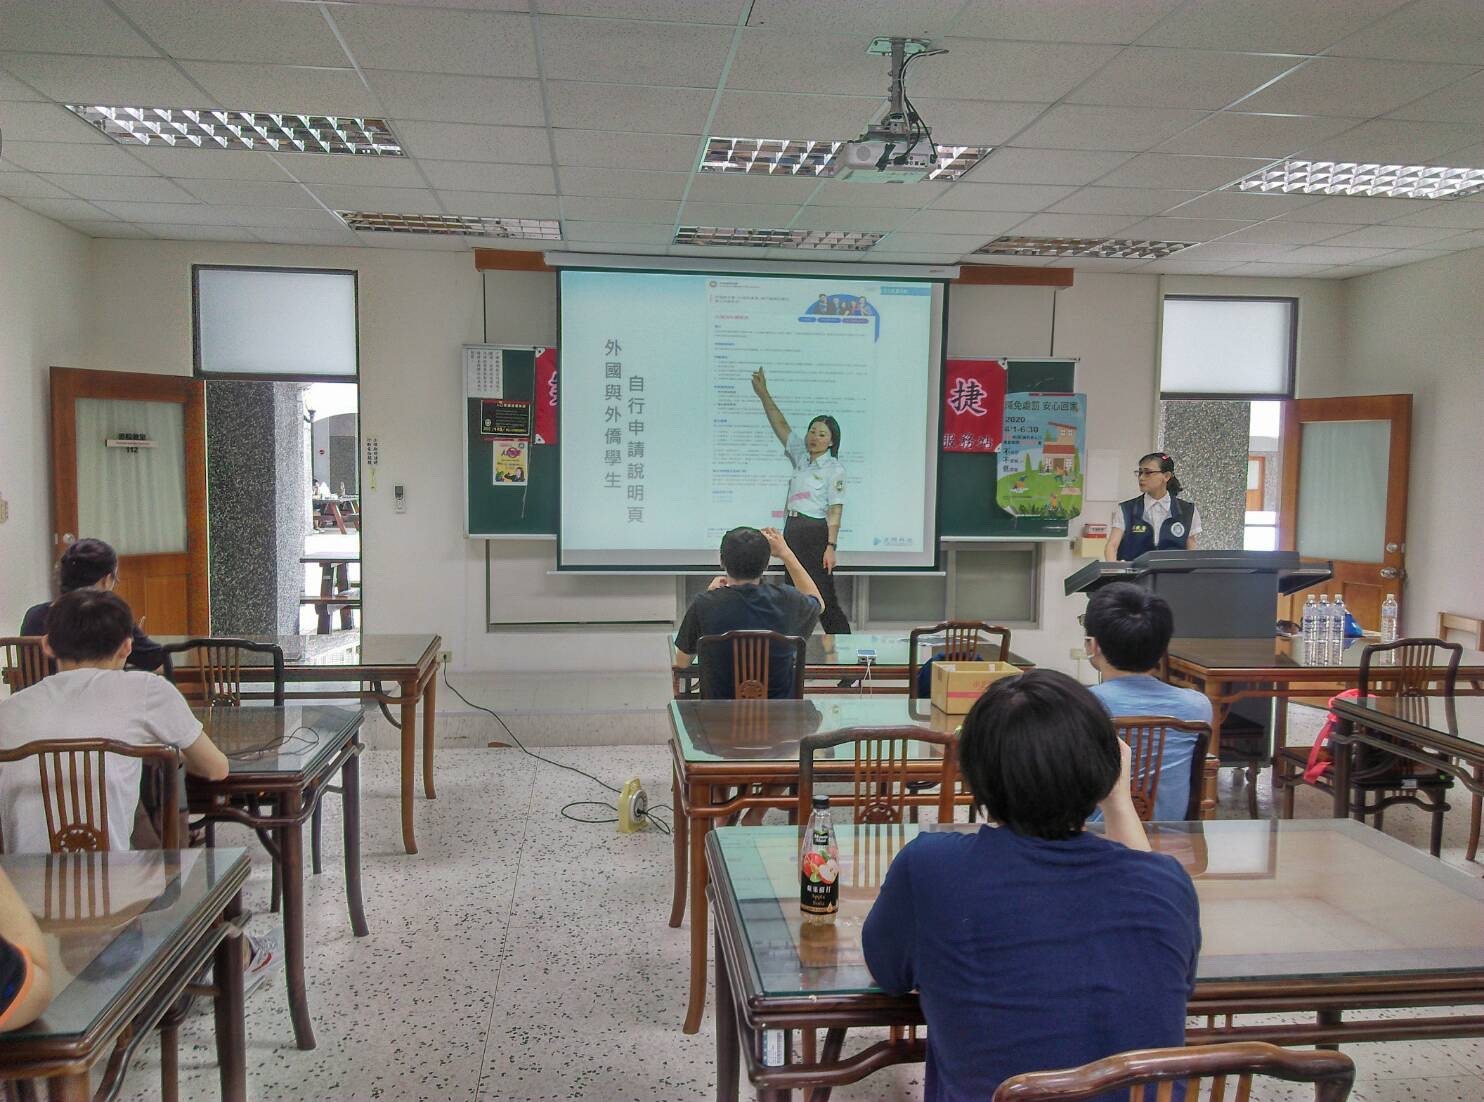 Trạm Phục vụ của Sở Di dân tại huyện Nghi Lan đã tổ chức các cuộc họp hướng dẫn và tuyên truyền cho các các trường cao đẳng và đại học trong phạm vi của huyện. (Nguồn ảnh: Trạm Phục vụ của Sở Di dân tại huyện Nghi Lan)